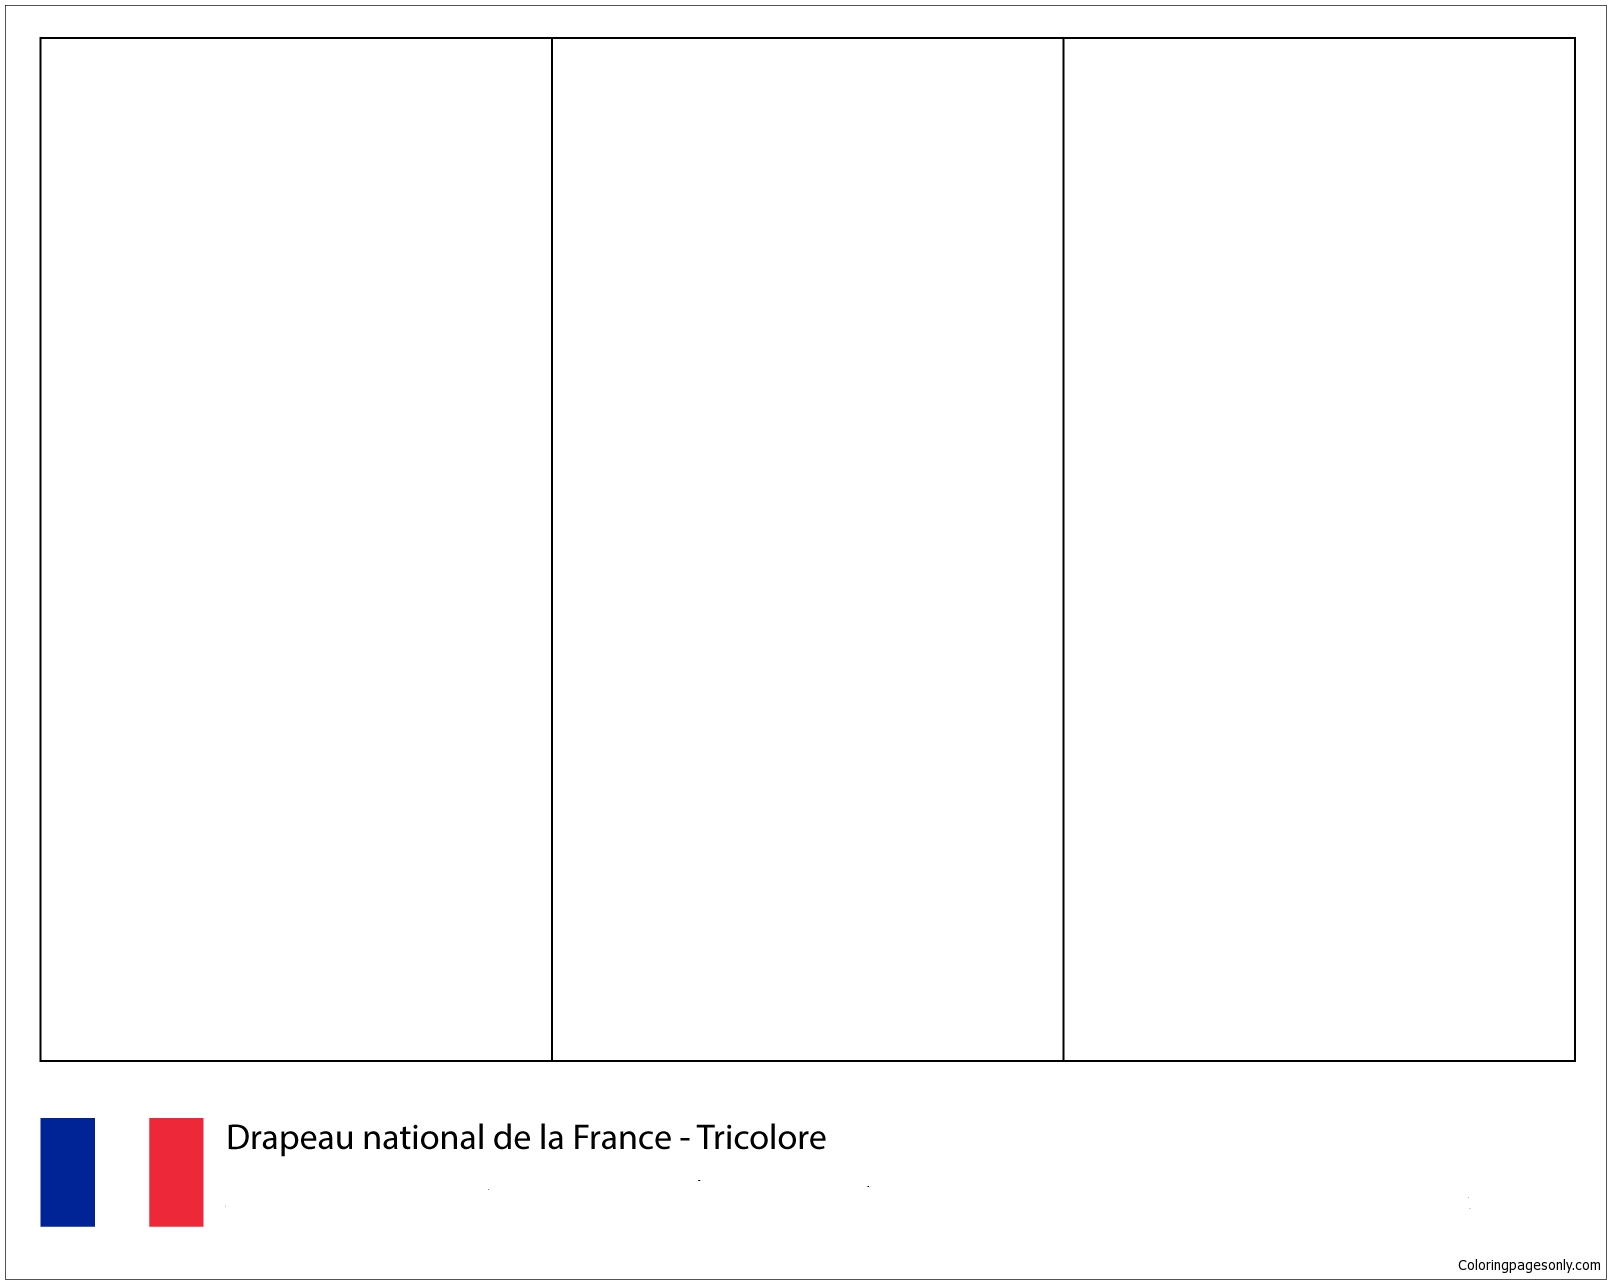 法国国旗-2018年世界杯 2018年世界杯旗帜